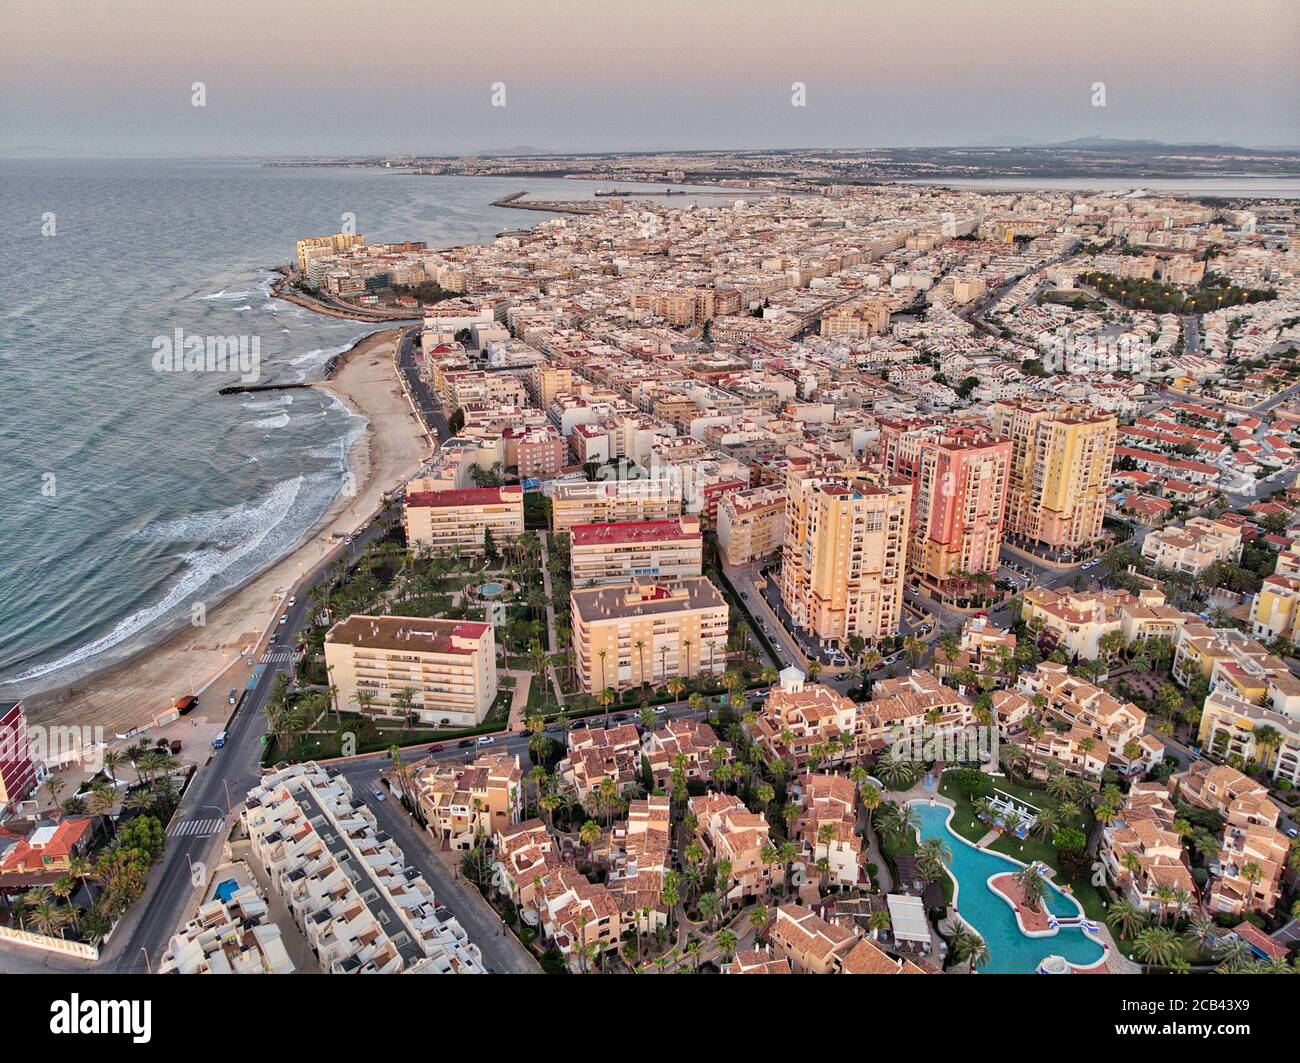 Luftpanoramabo von Torrevieja Stadtbild, felsige Küste Mittelmeer bei Sonnenaufgang, Salzsee oder Las Salinas, Bildansicht von oben. Pro Stockfoto